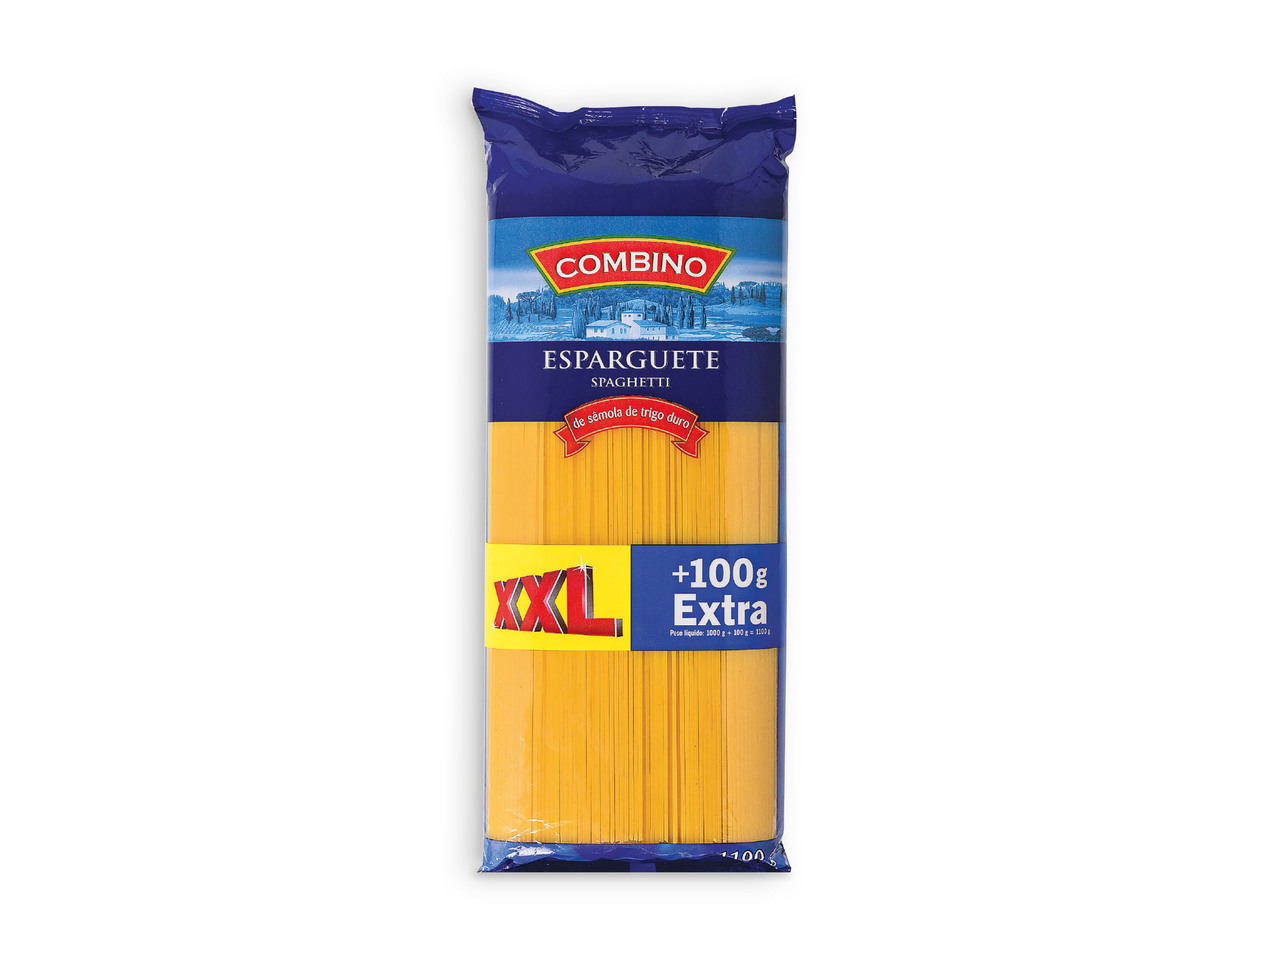 COMBINO(R) Esparguete